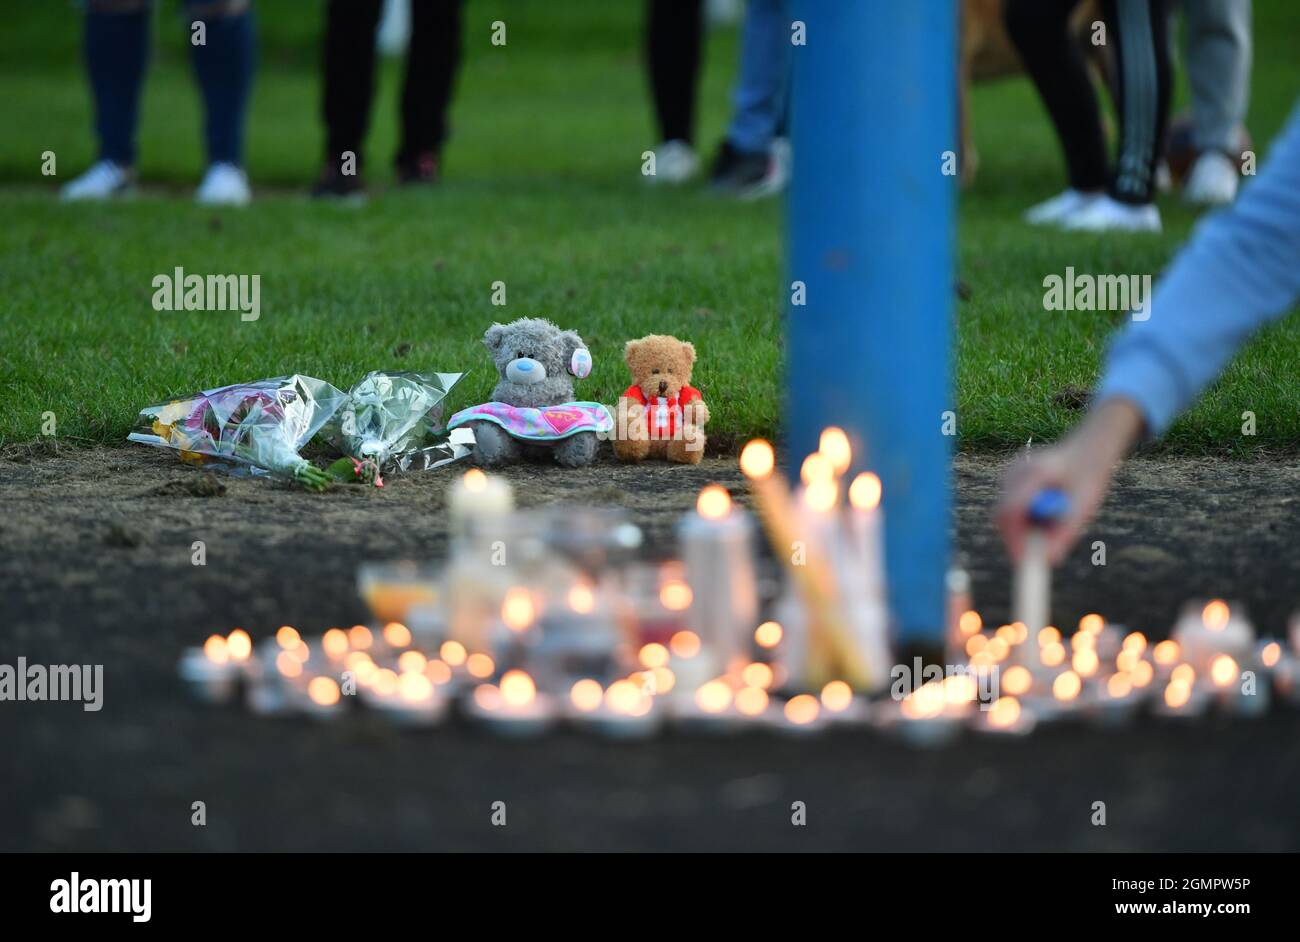 Des fleurs, des jouets mous et des bougies sont vus à une veille sur la scène à Chandos Crescent, Killamarsh, près de Sheffield, où quatre personnes ont été trouvées mortes dans une maison dimanche. Date de la photo: Lundi 20 septembre 2021. Banque D'Images